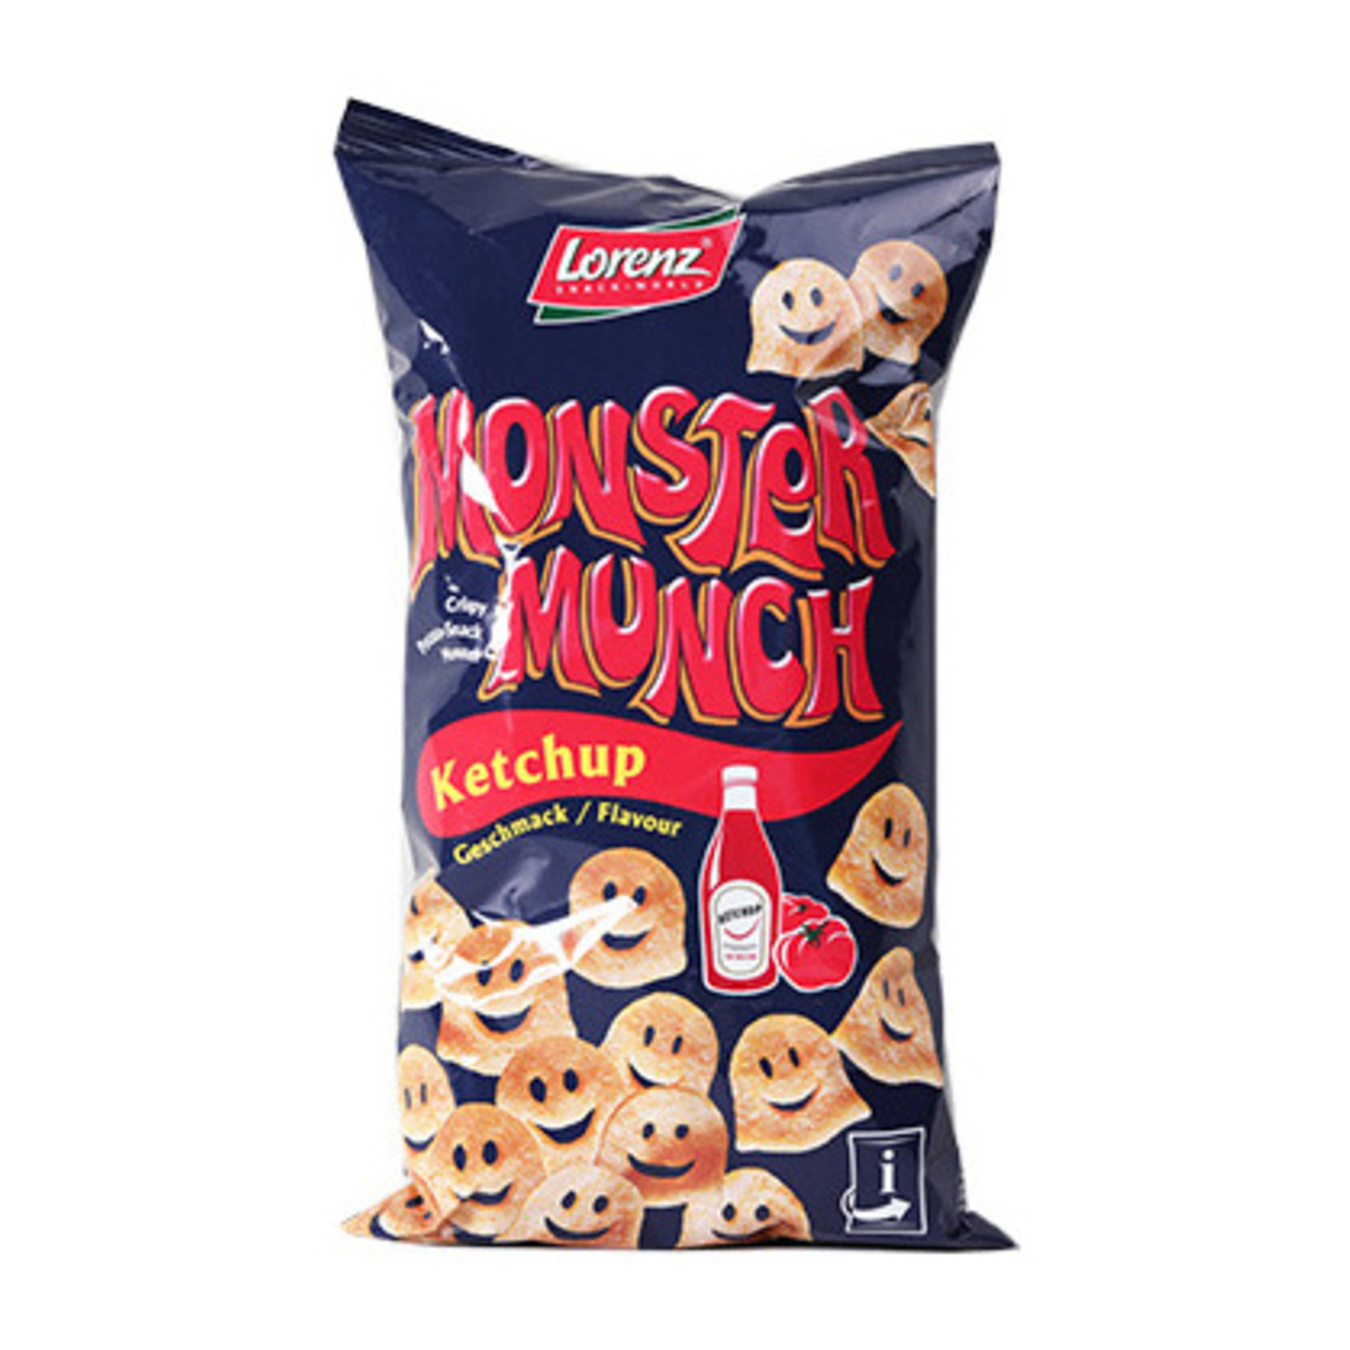 Снеки Lorenz Monster Munch Кетчуп картофельные 75г